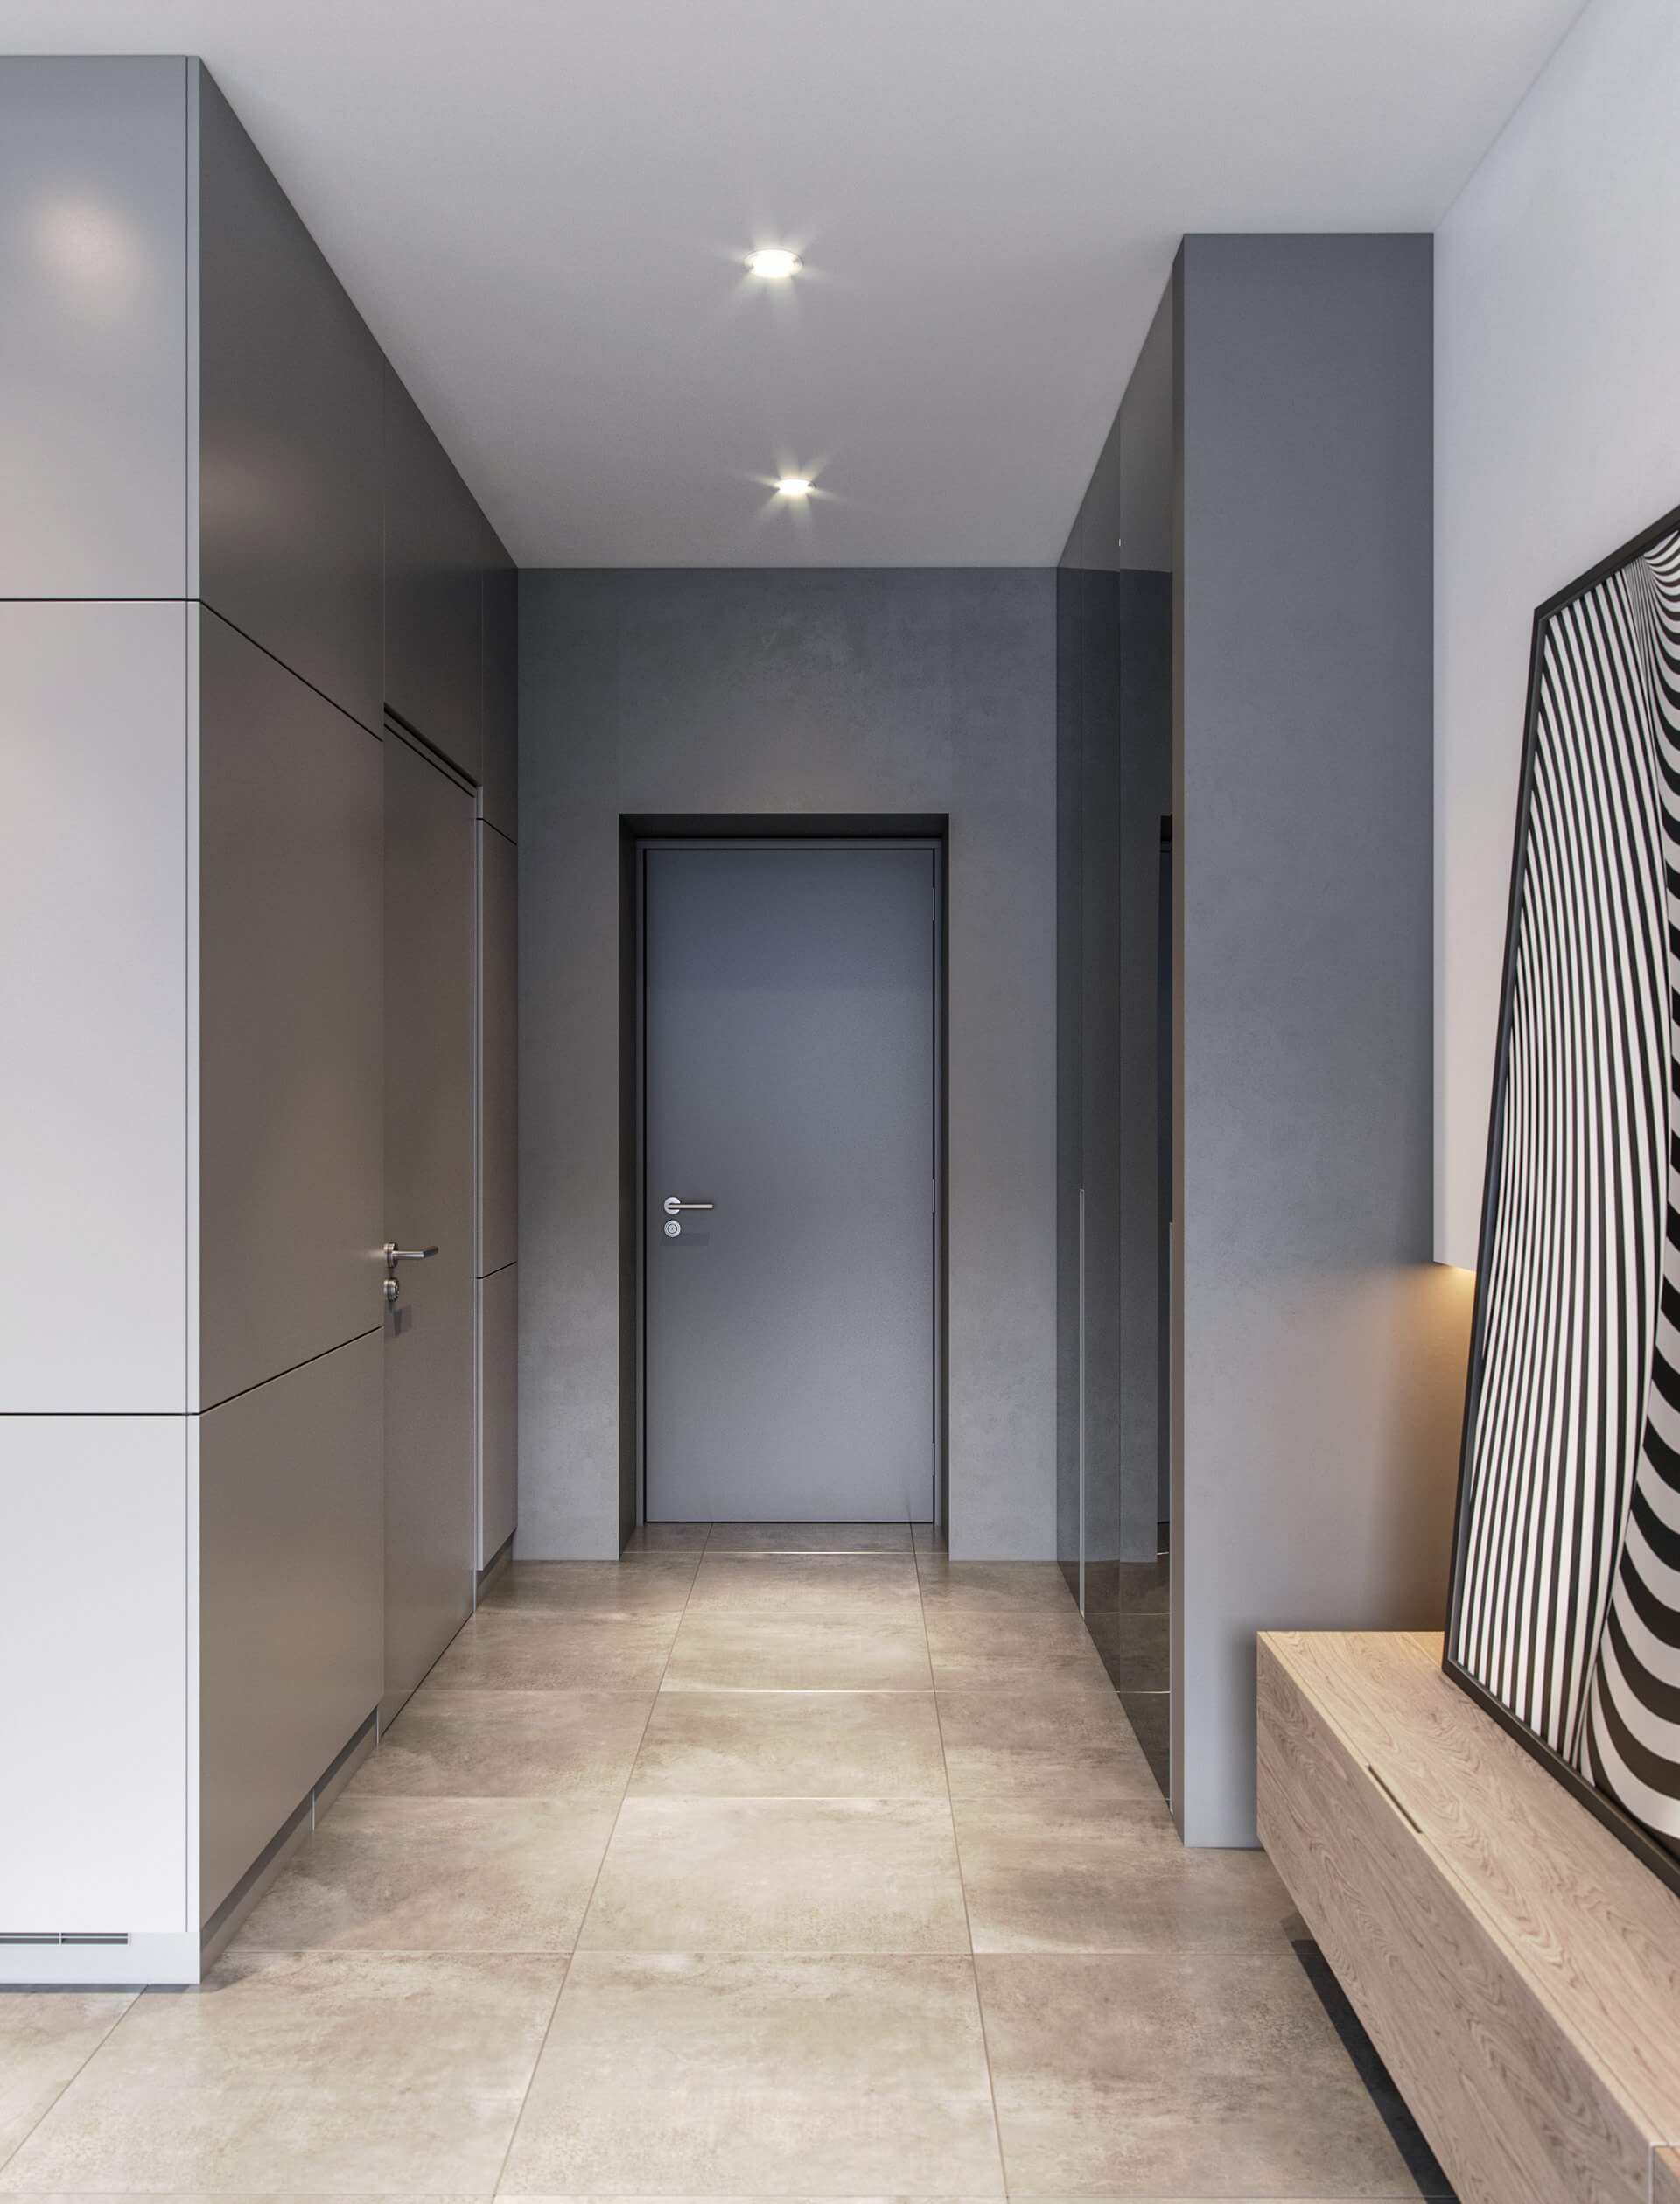 Small 63 m2 Apartment corridor entrance - cgi visualization